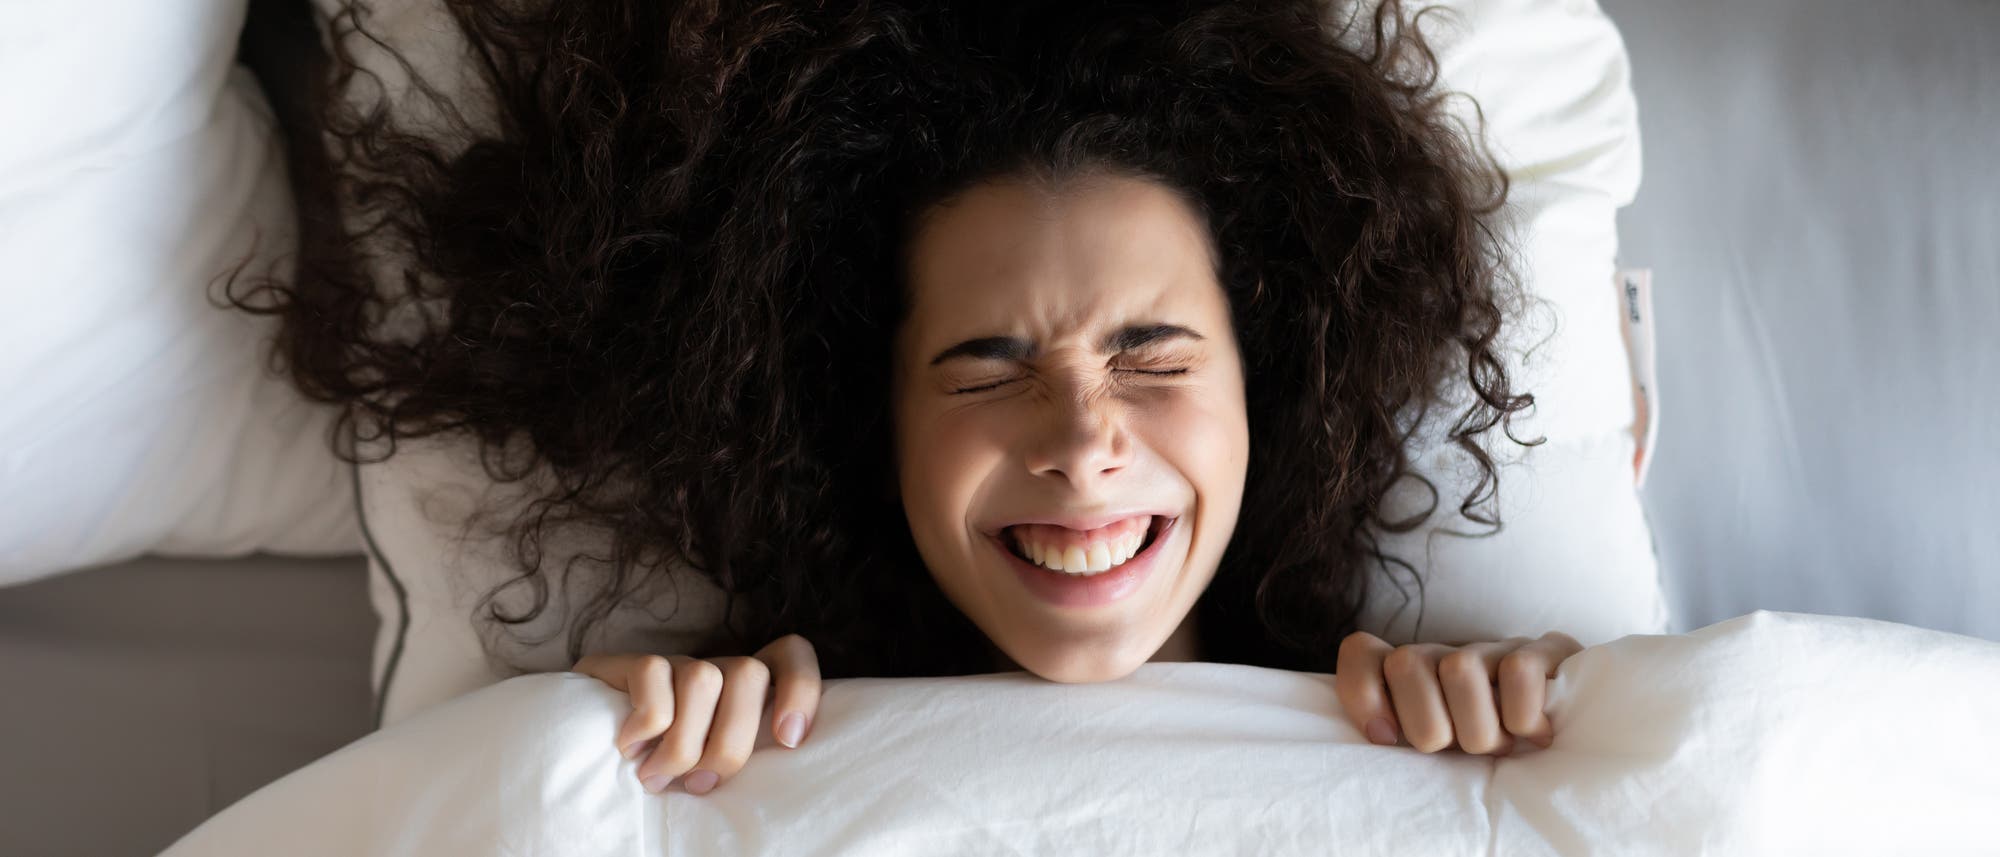 Eine lachende Frau im Bett